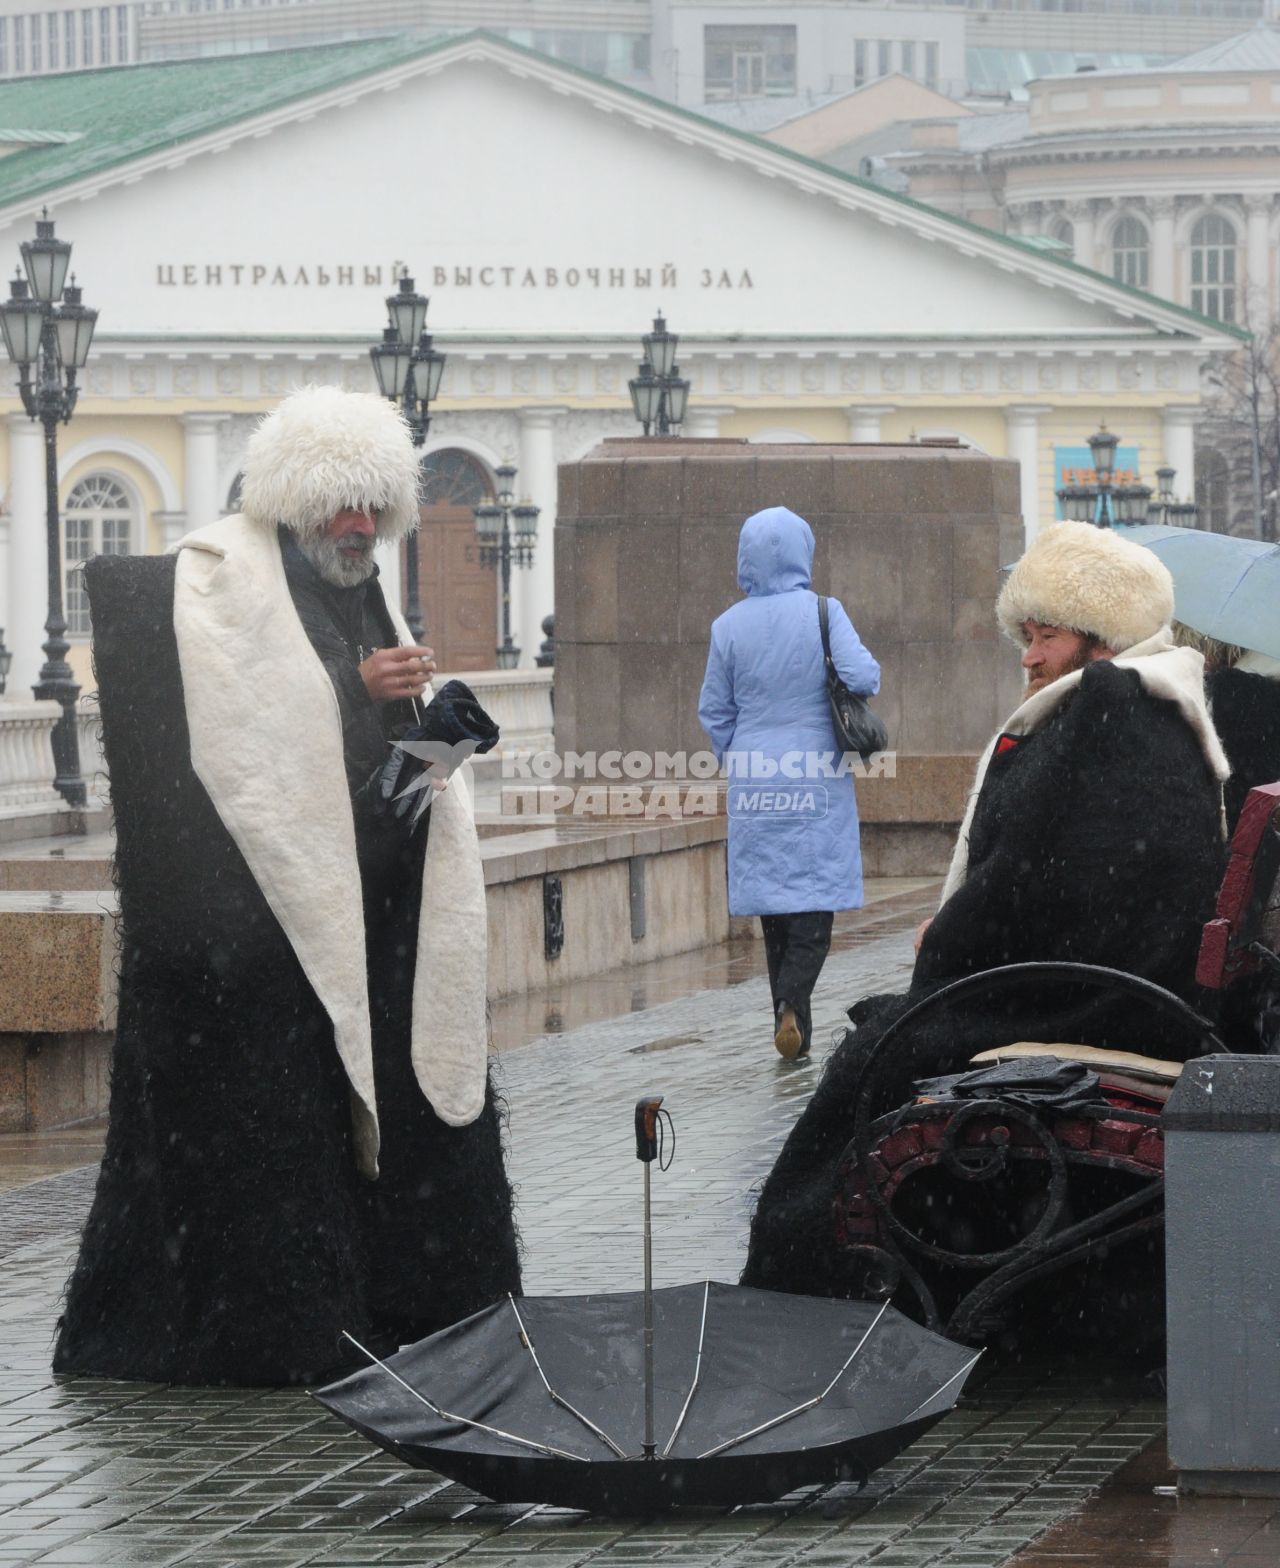 29 октября 2010 года. Наступление зимы в Москве. Джигиты на Манежной площади.